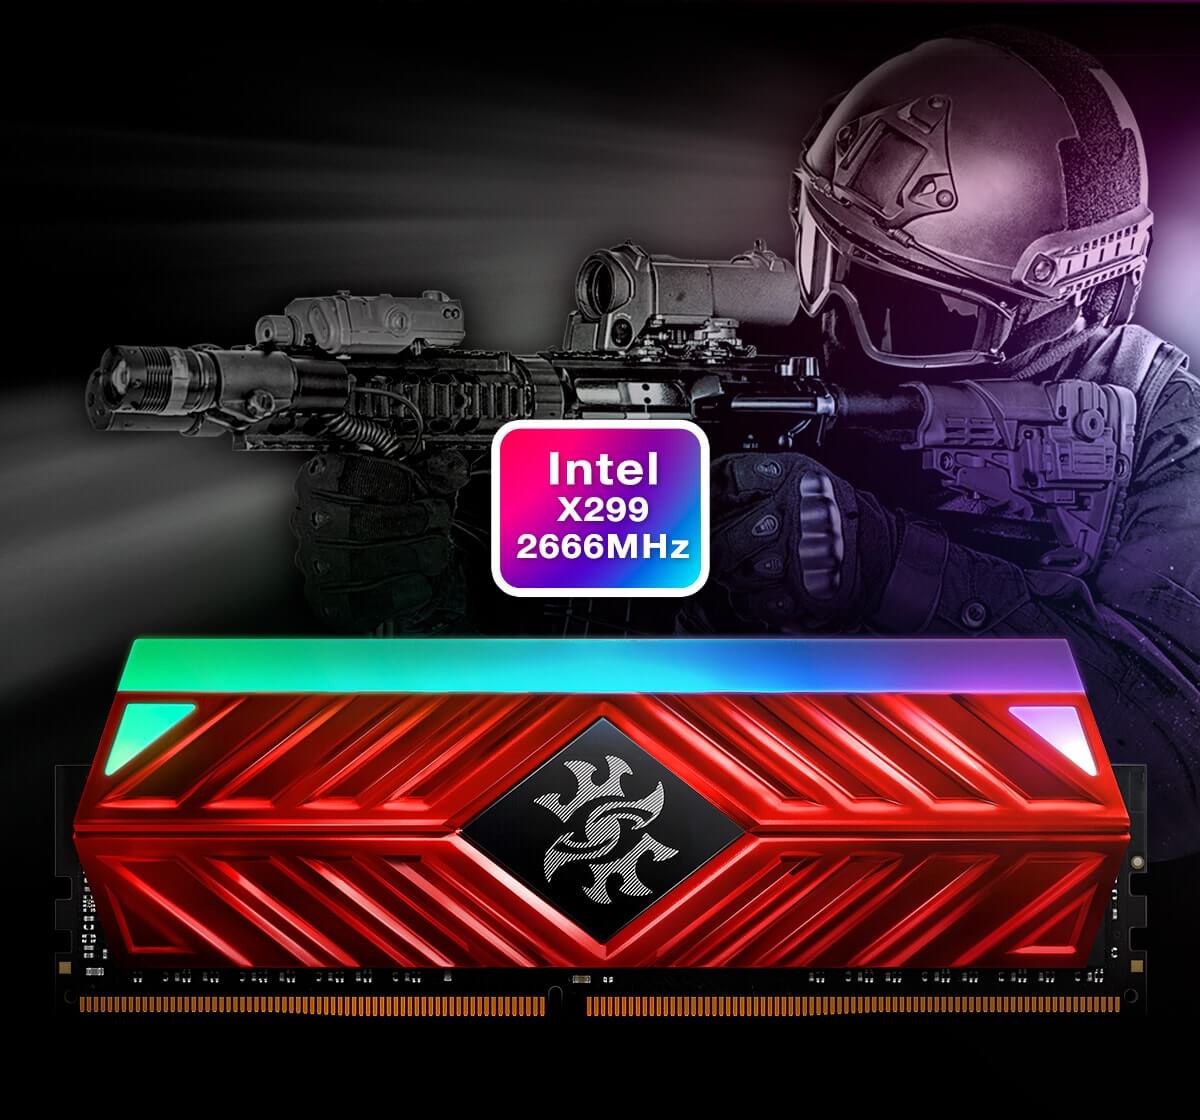 RAM Adata 8Gb DDR4-3000- XPG SPECTRIX D41 (AX4U300038G16A-ST41)- Tản LED RGB